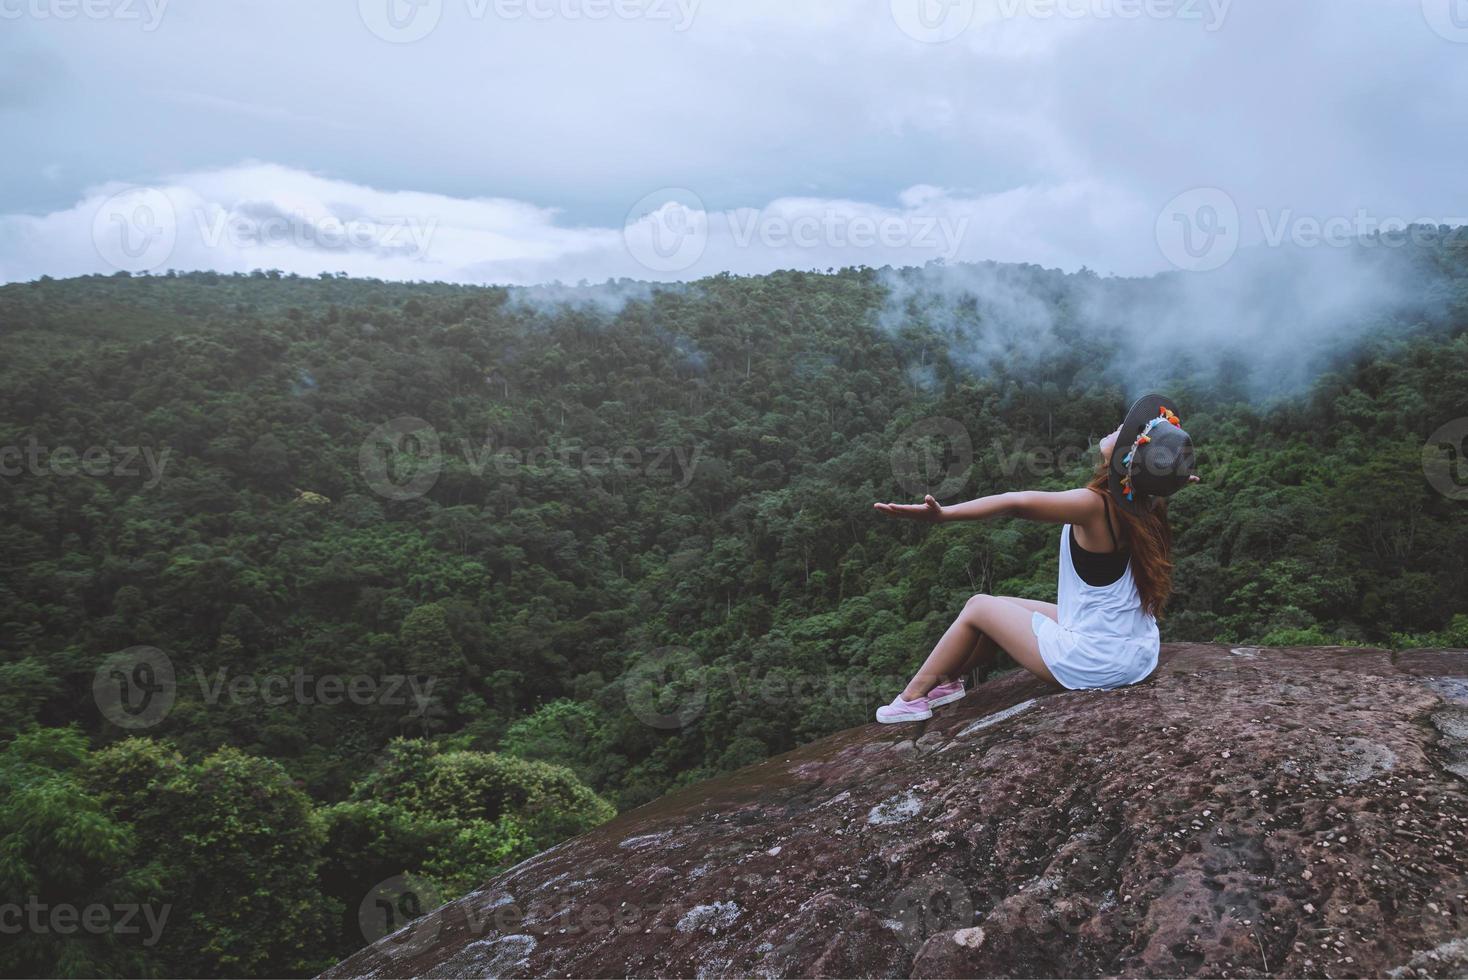 mulher asiática viajar natureza. viajar relaxar. liberdade mulher viajante feliz em pé com os braços erguidos e desfrutando de uma bela natureza no pico da montanha nebulosa. foto